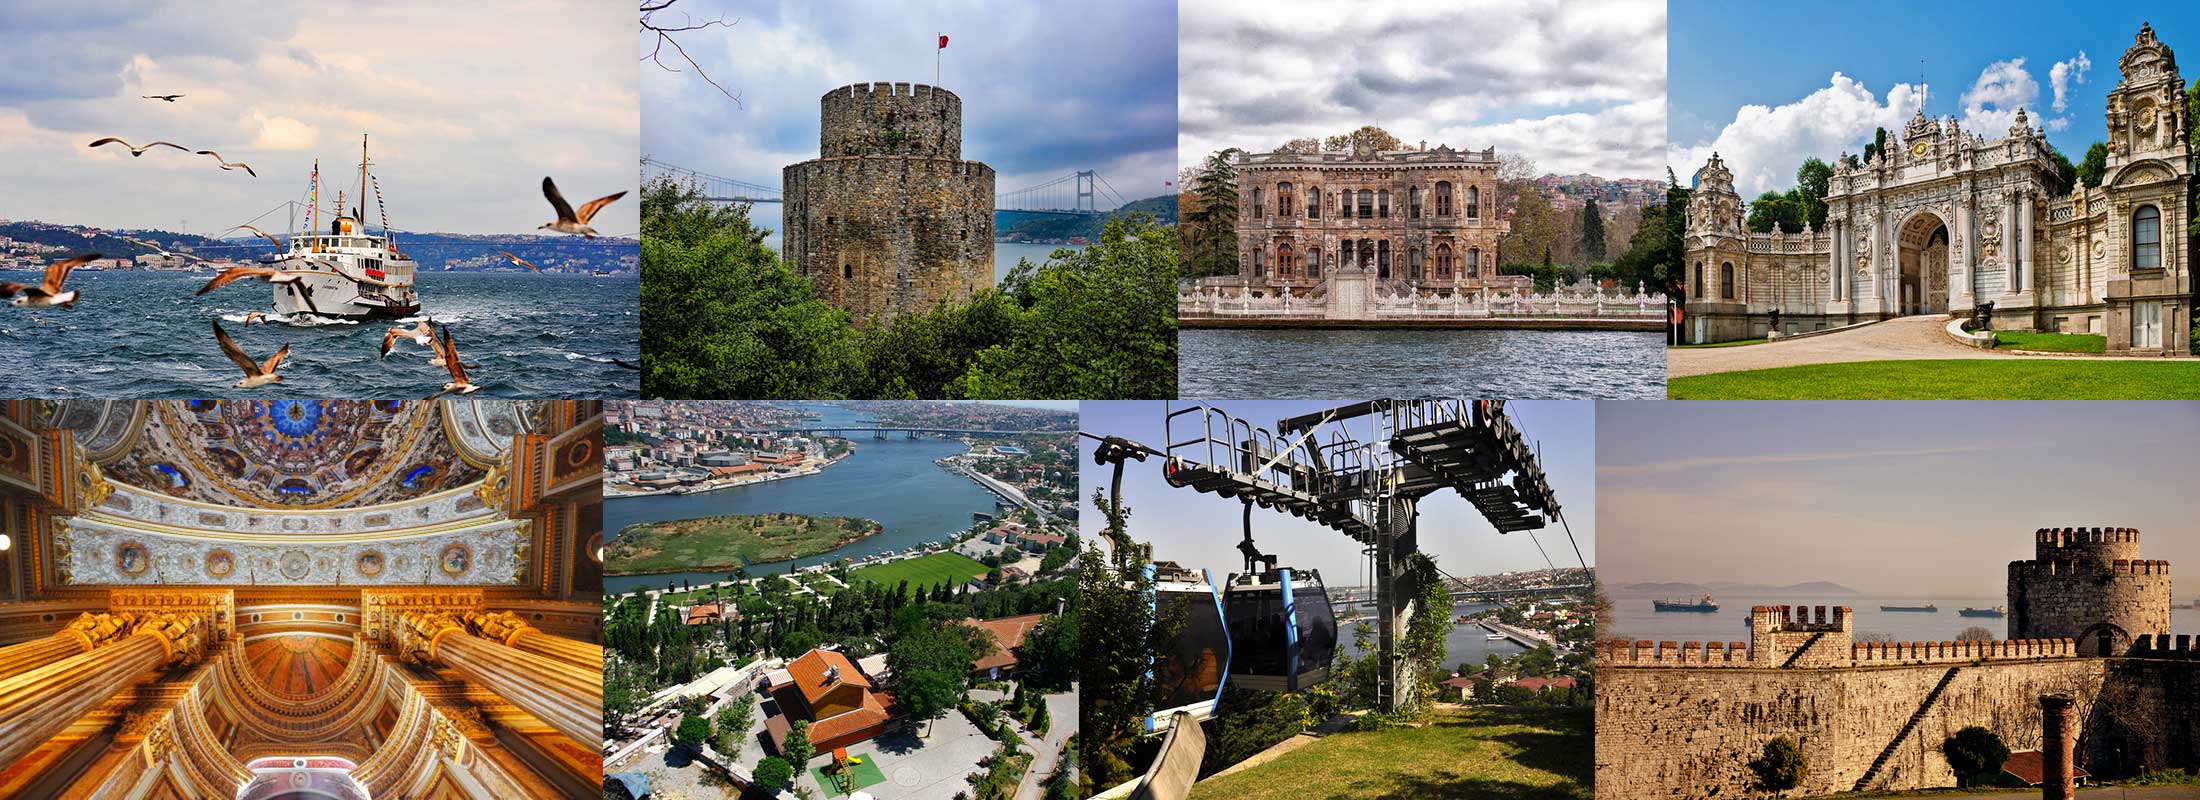 bosphorus-cruise-kucuksu-palace-dolmabahce-istanbul-daily-city-tours